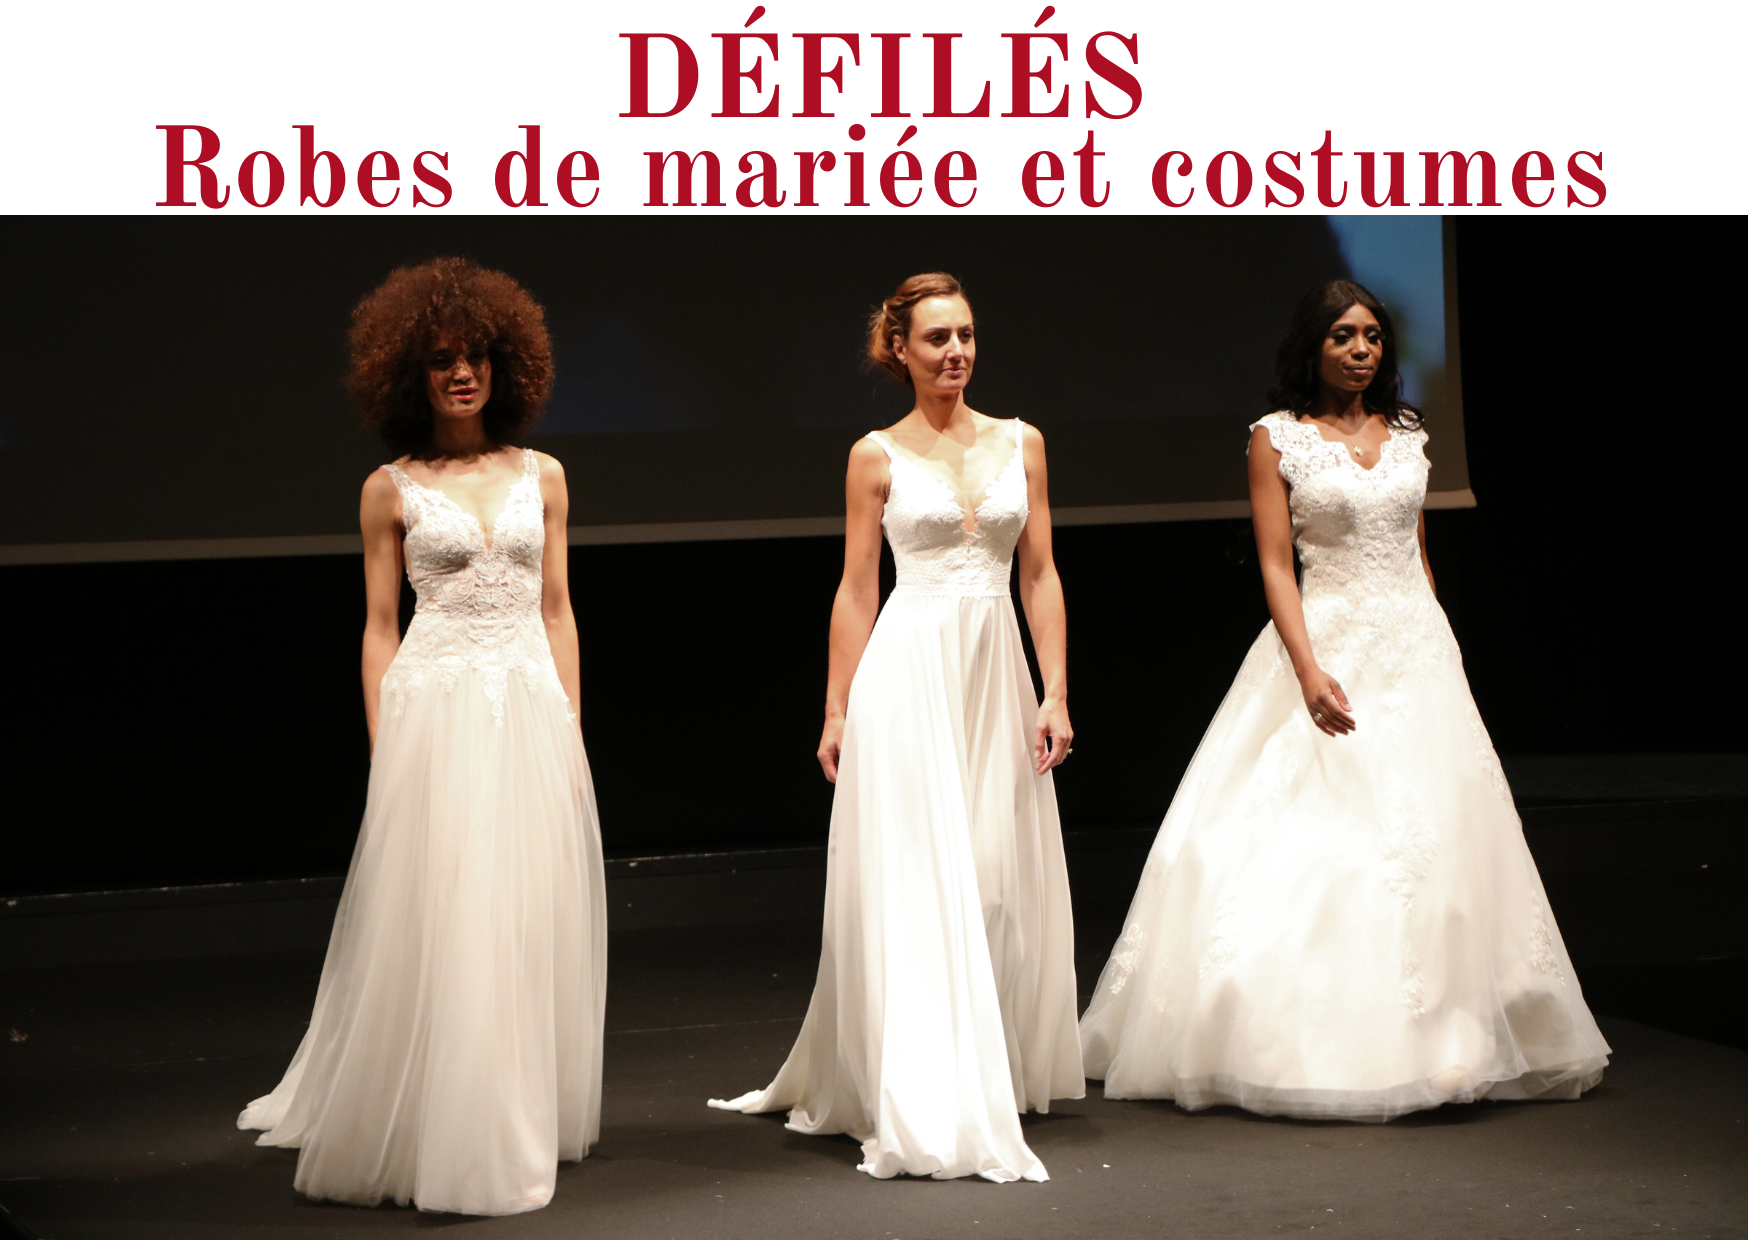 Défilés - Robes de mariées et costumes